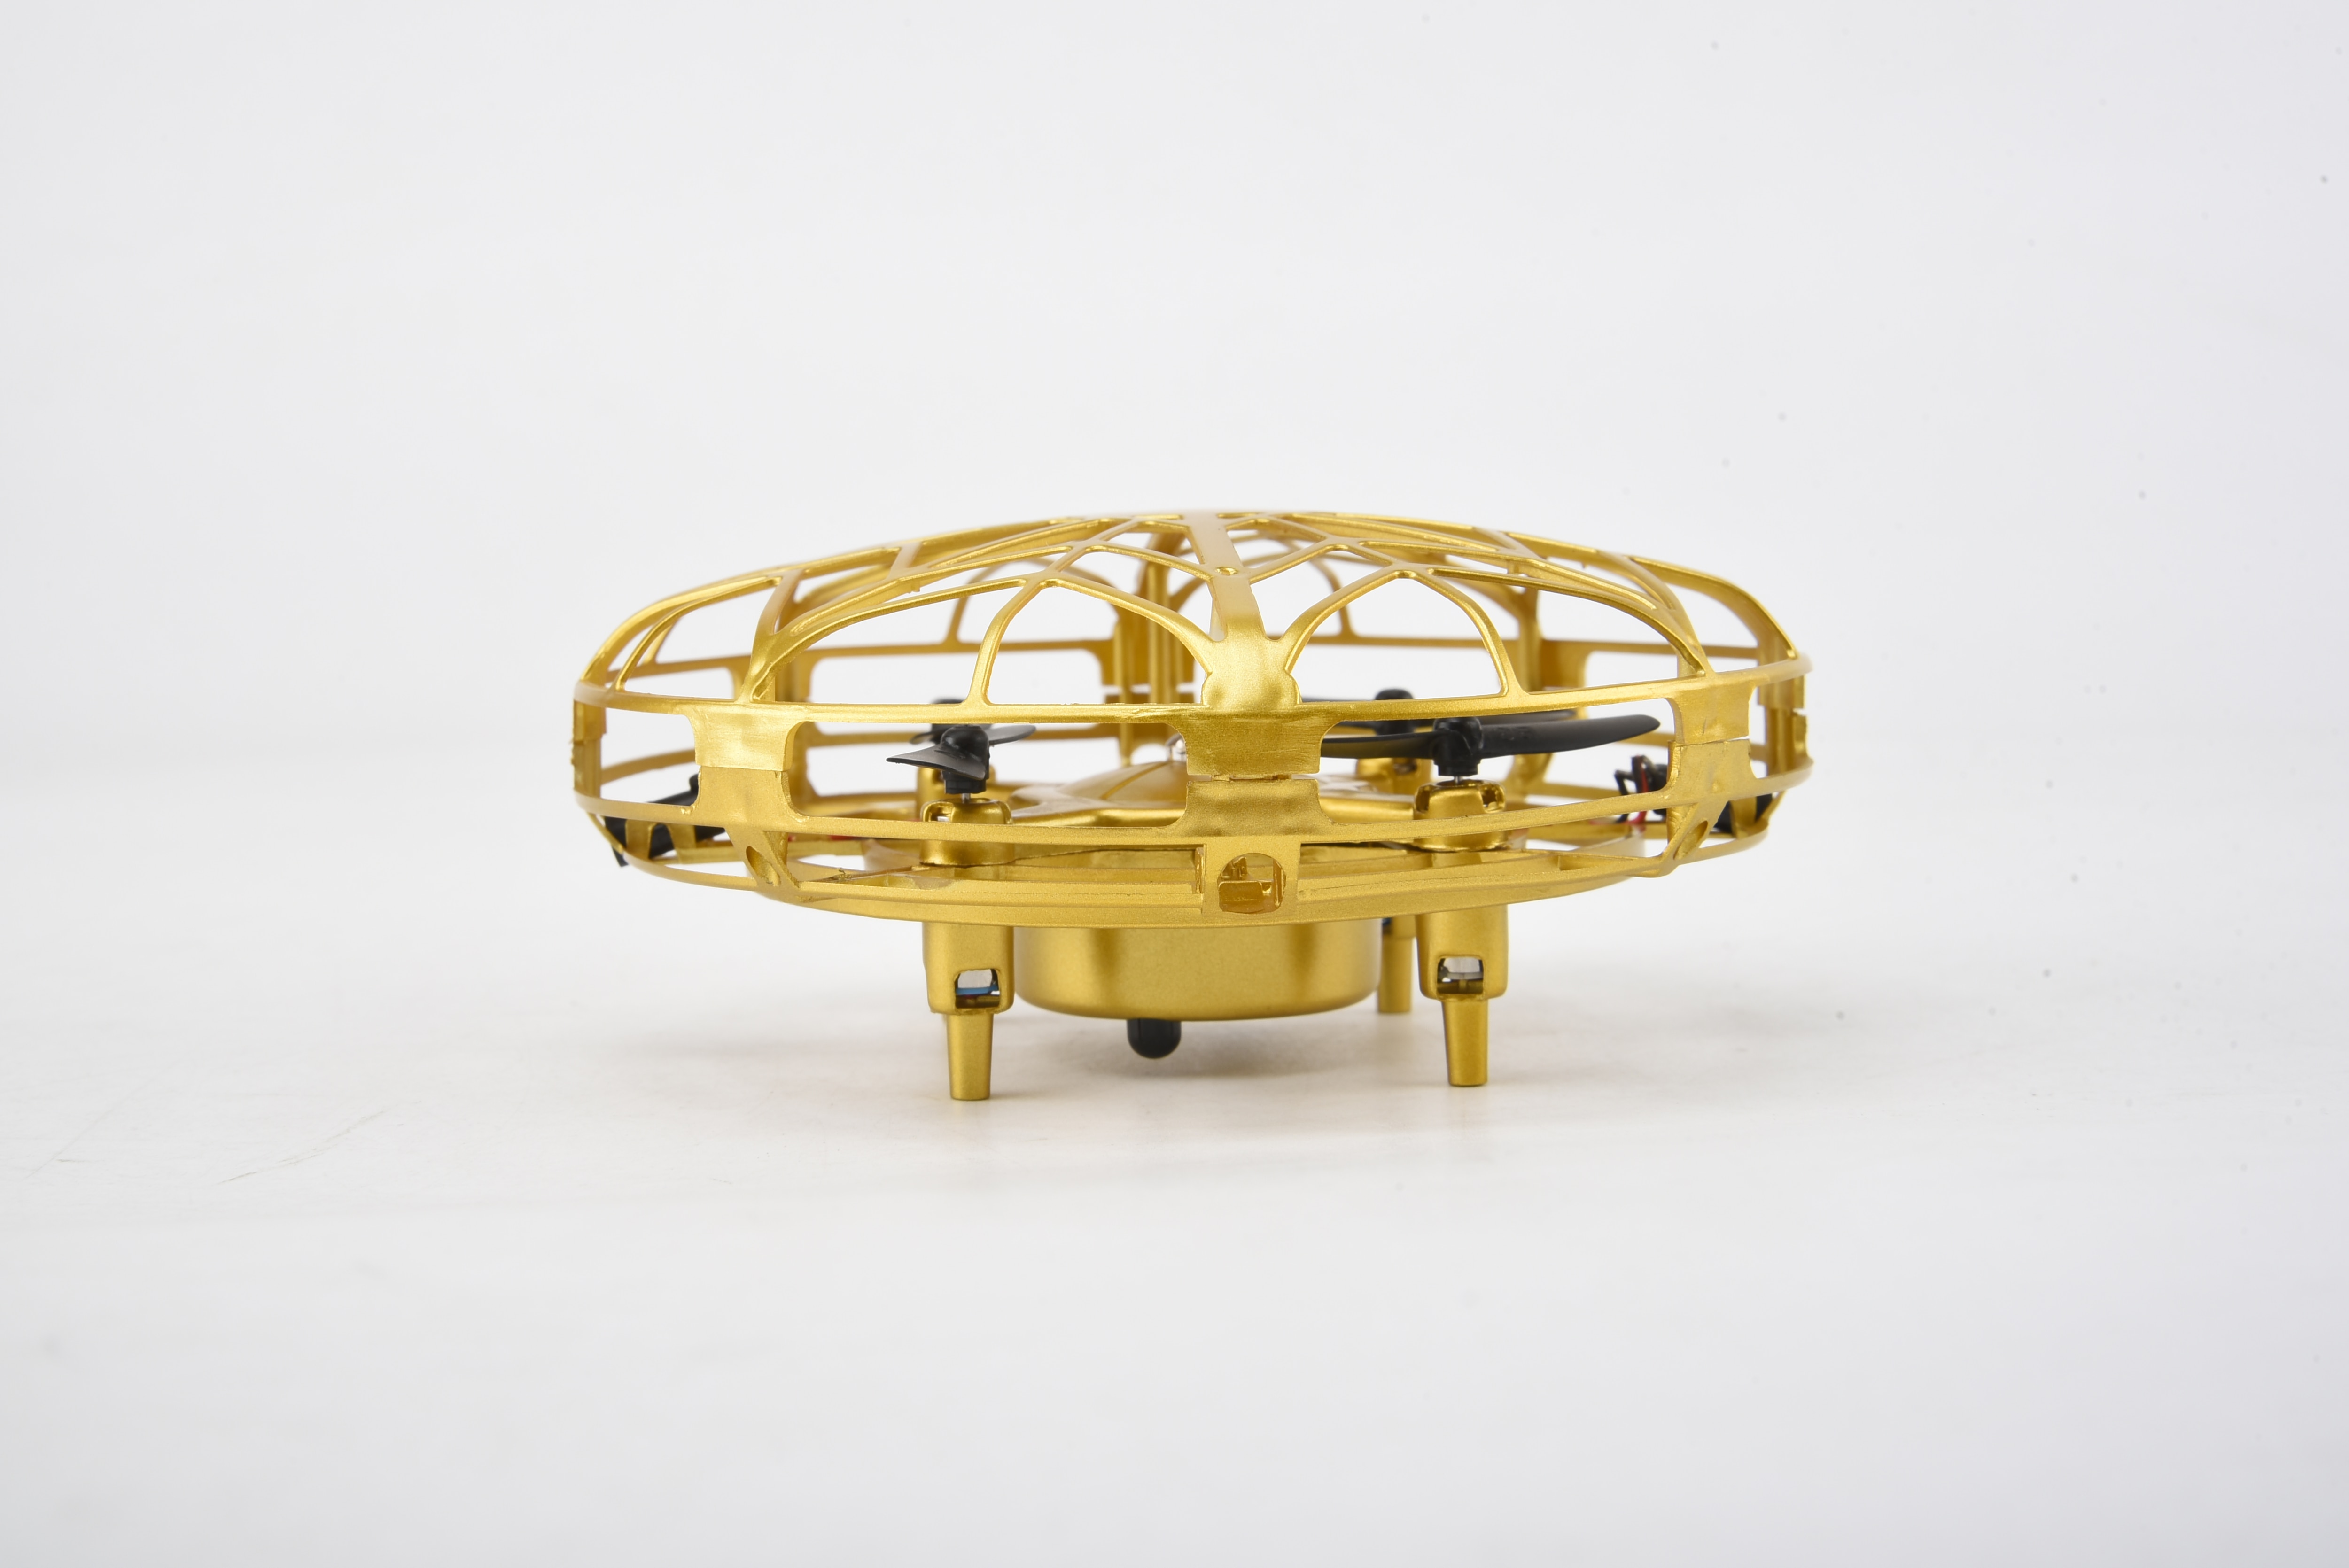 Smart Drone UFO, gold